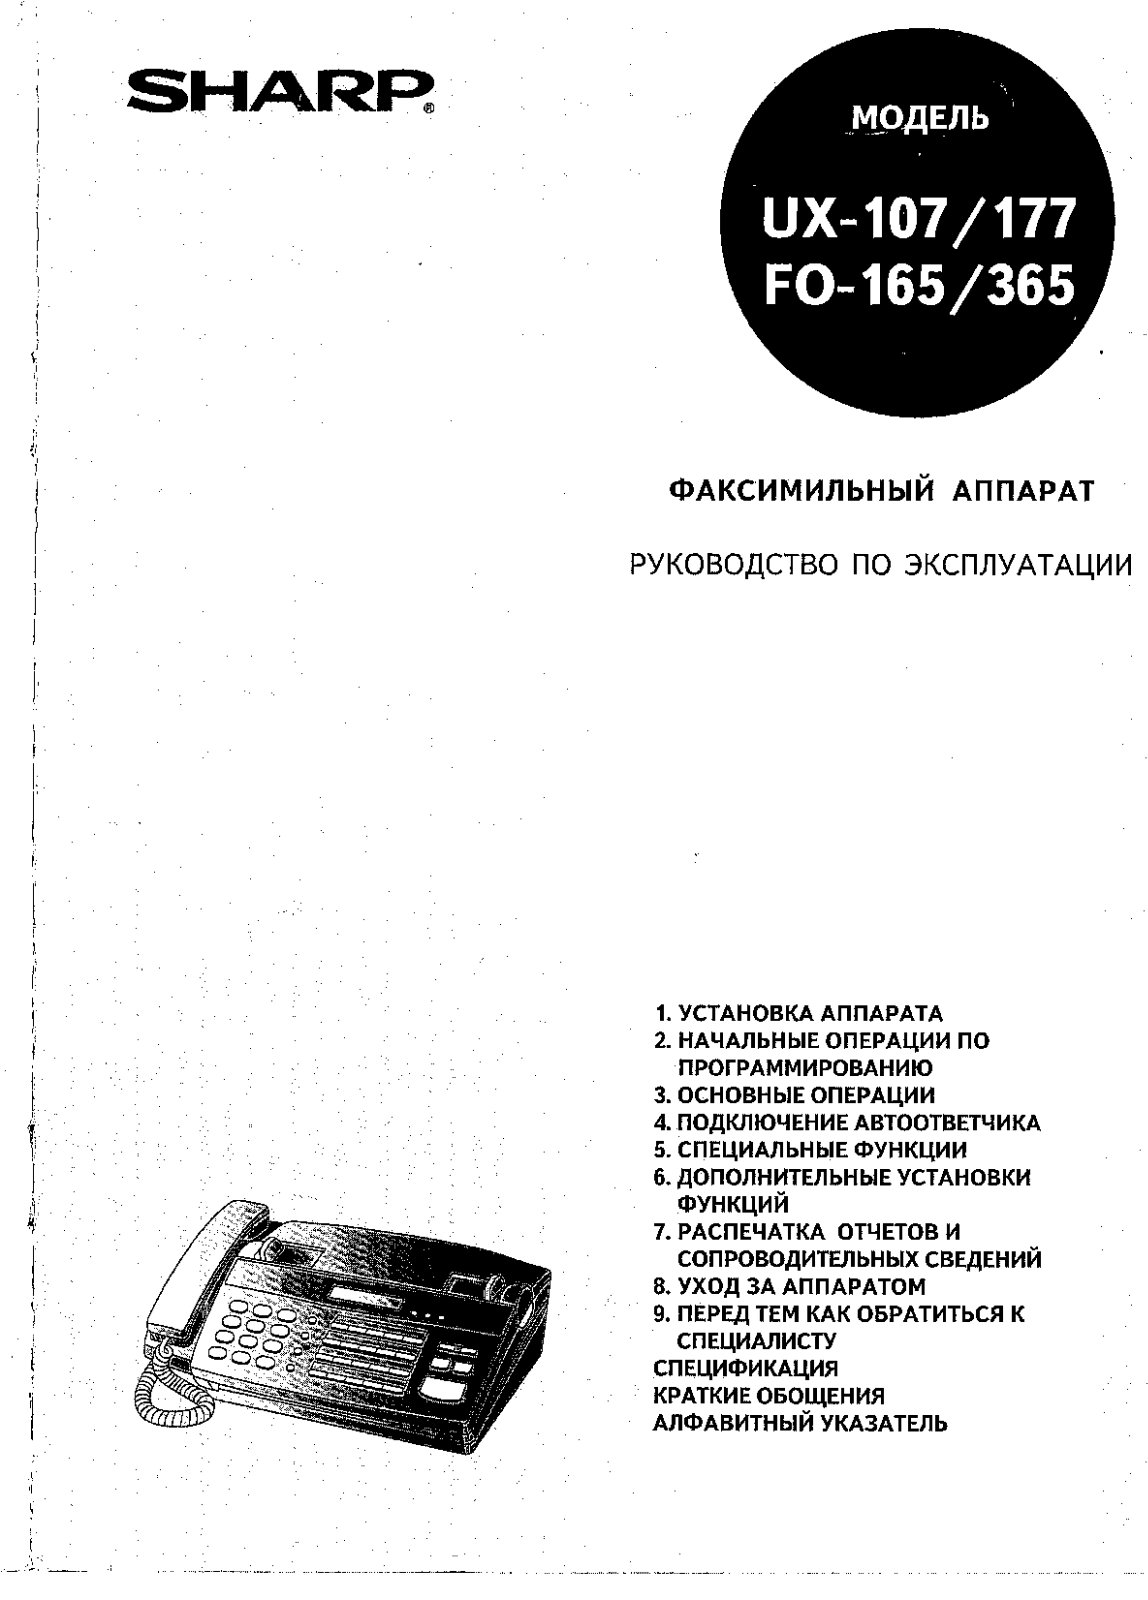 Sharp FO-165, UX-107, UX-177, FO-365 User Manual